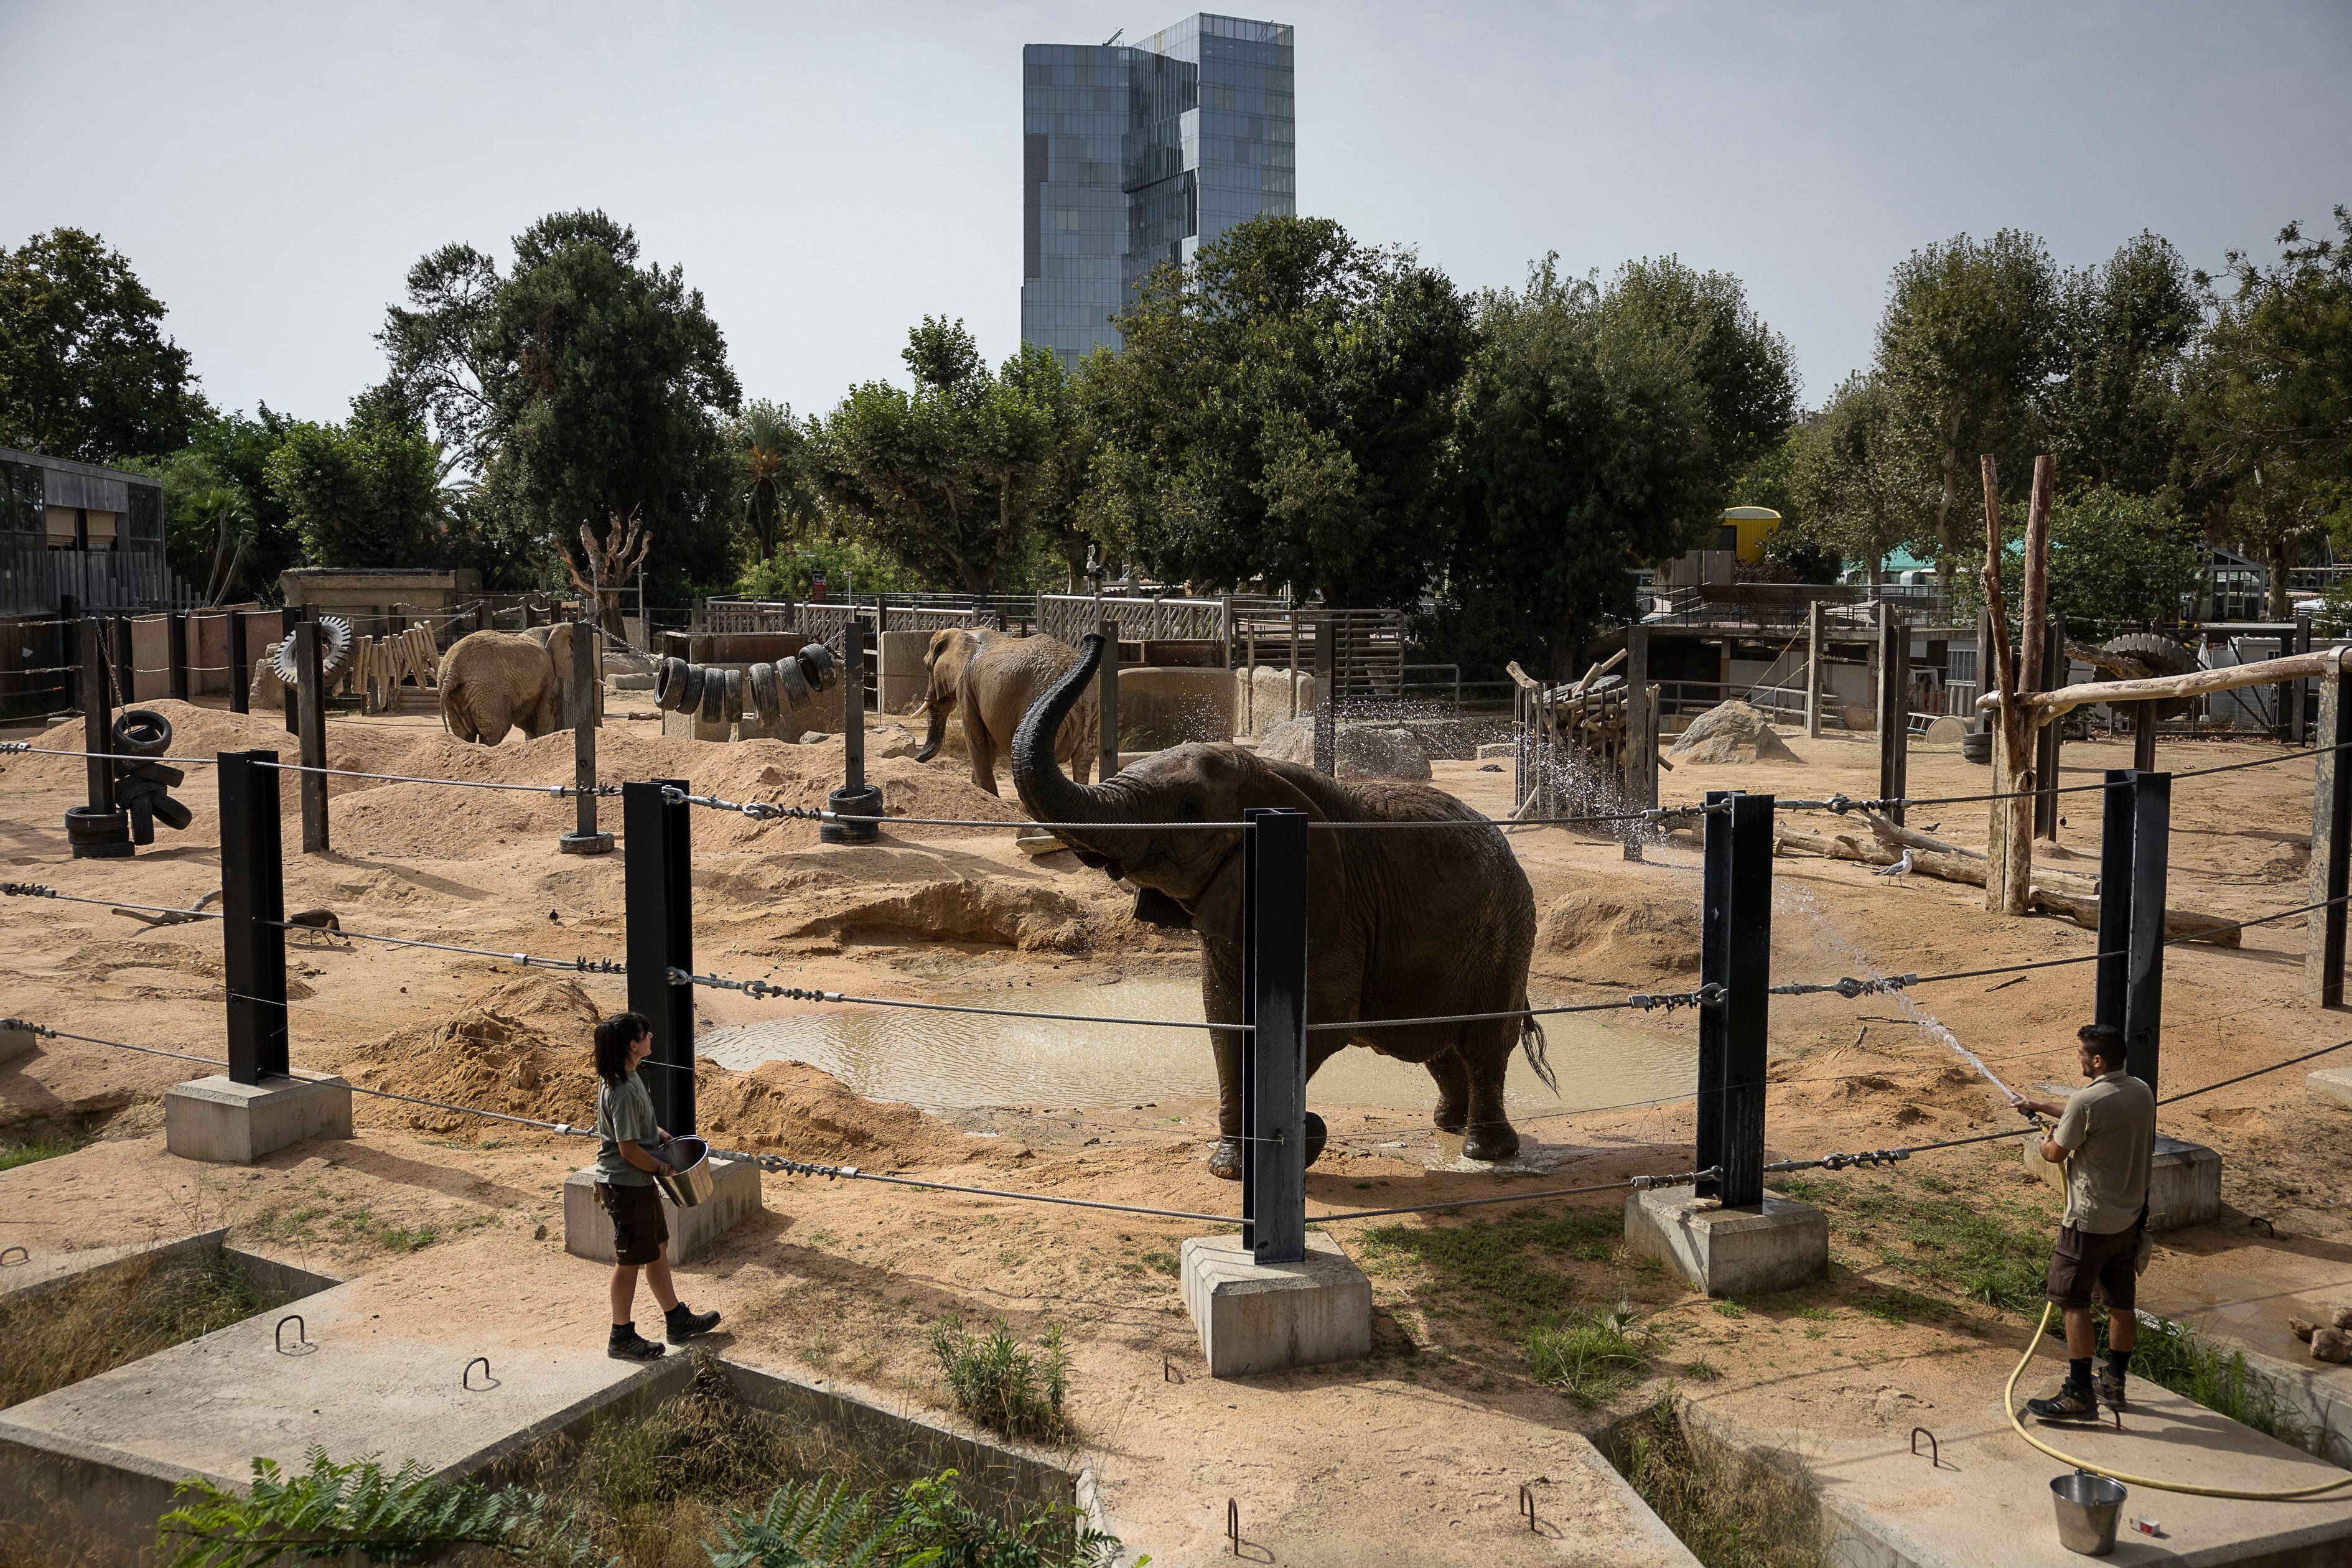 Cuidadores del zoo mojan con una manguera a las elefantas.